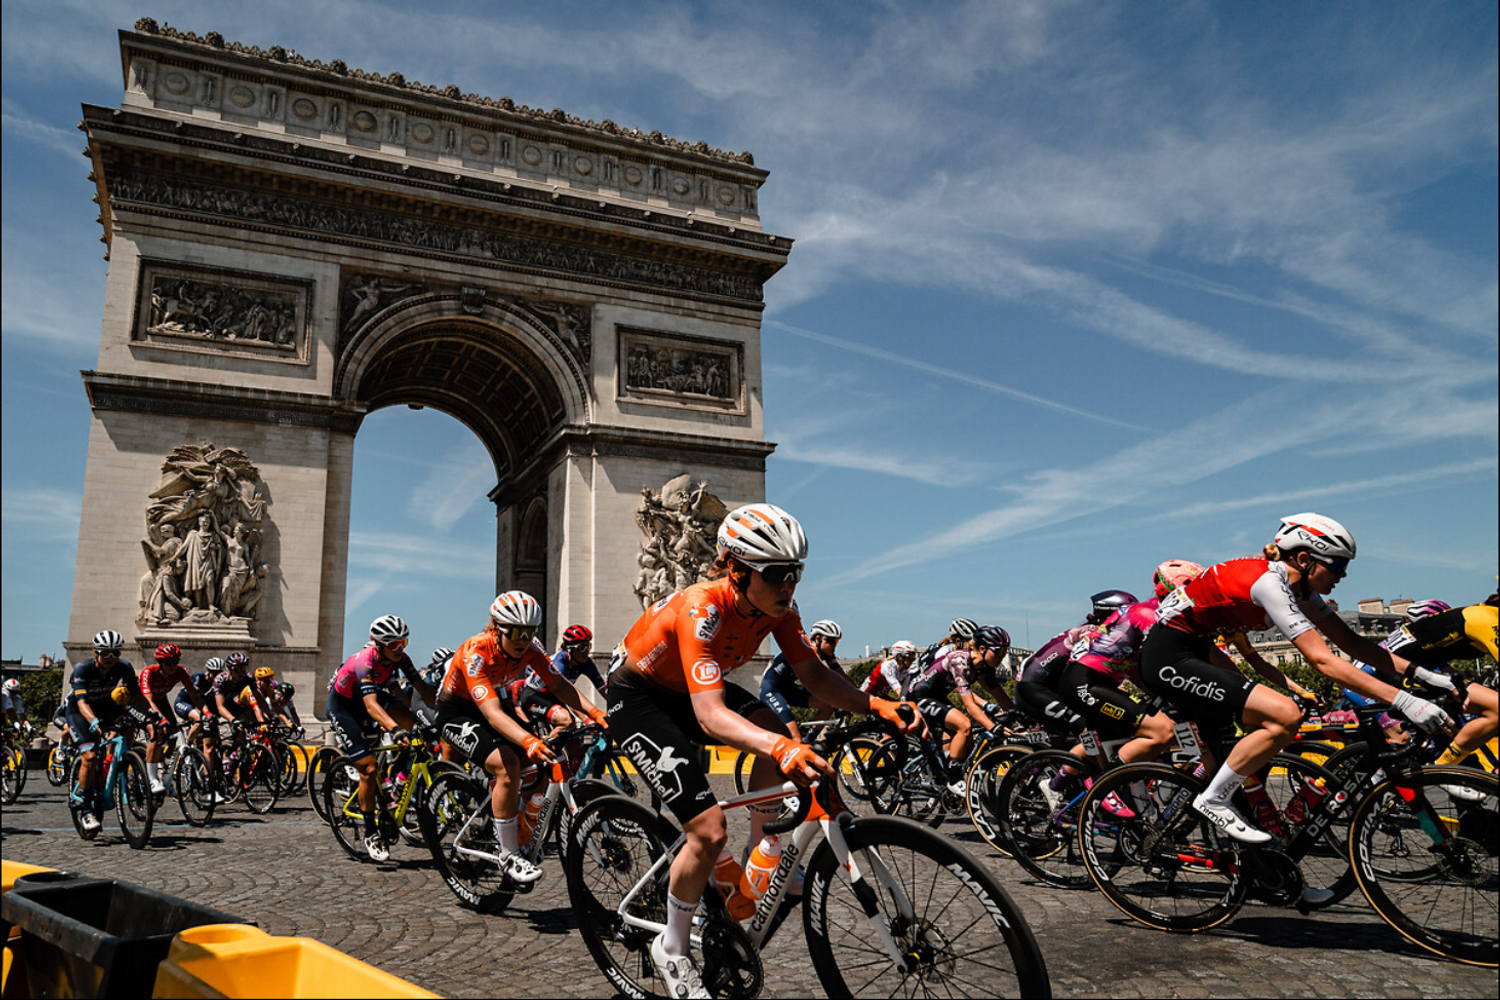 Le Tour de France Femmes se terminera ce dimanche 31 juillet.